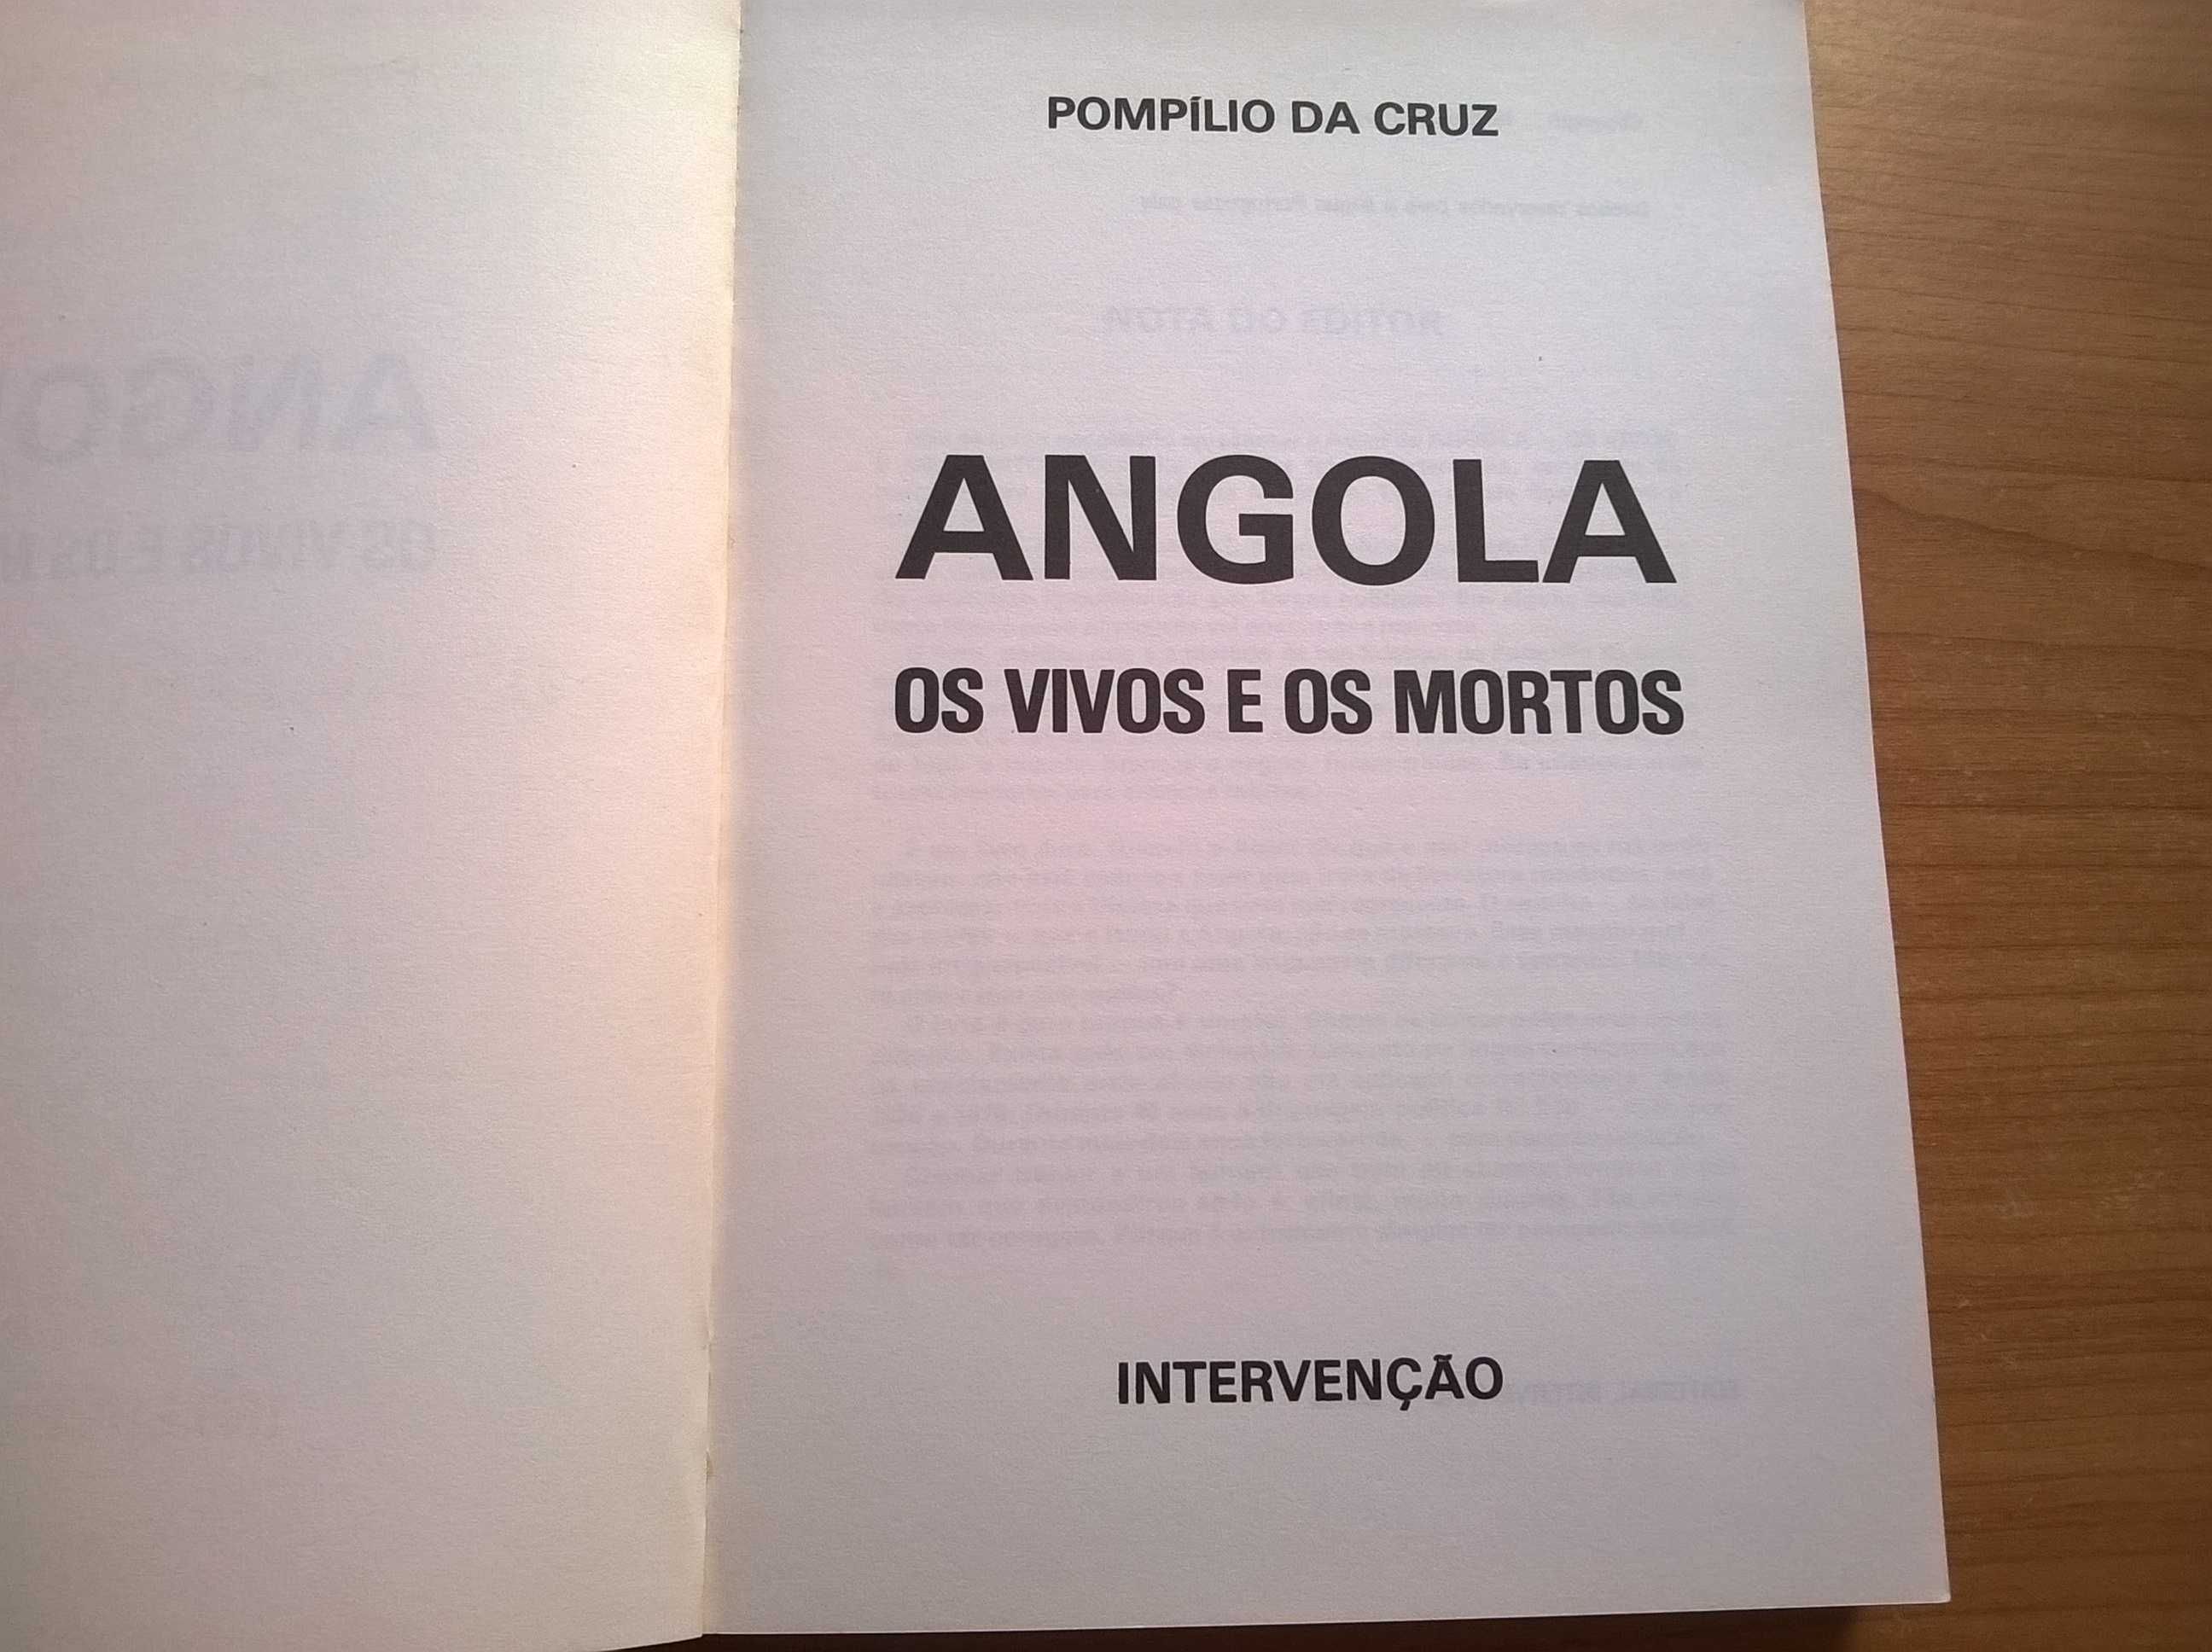 Angola, Os Vivos e os Mortos - Pompílio da Cruz